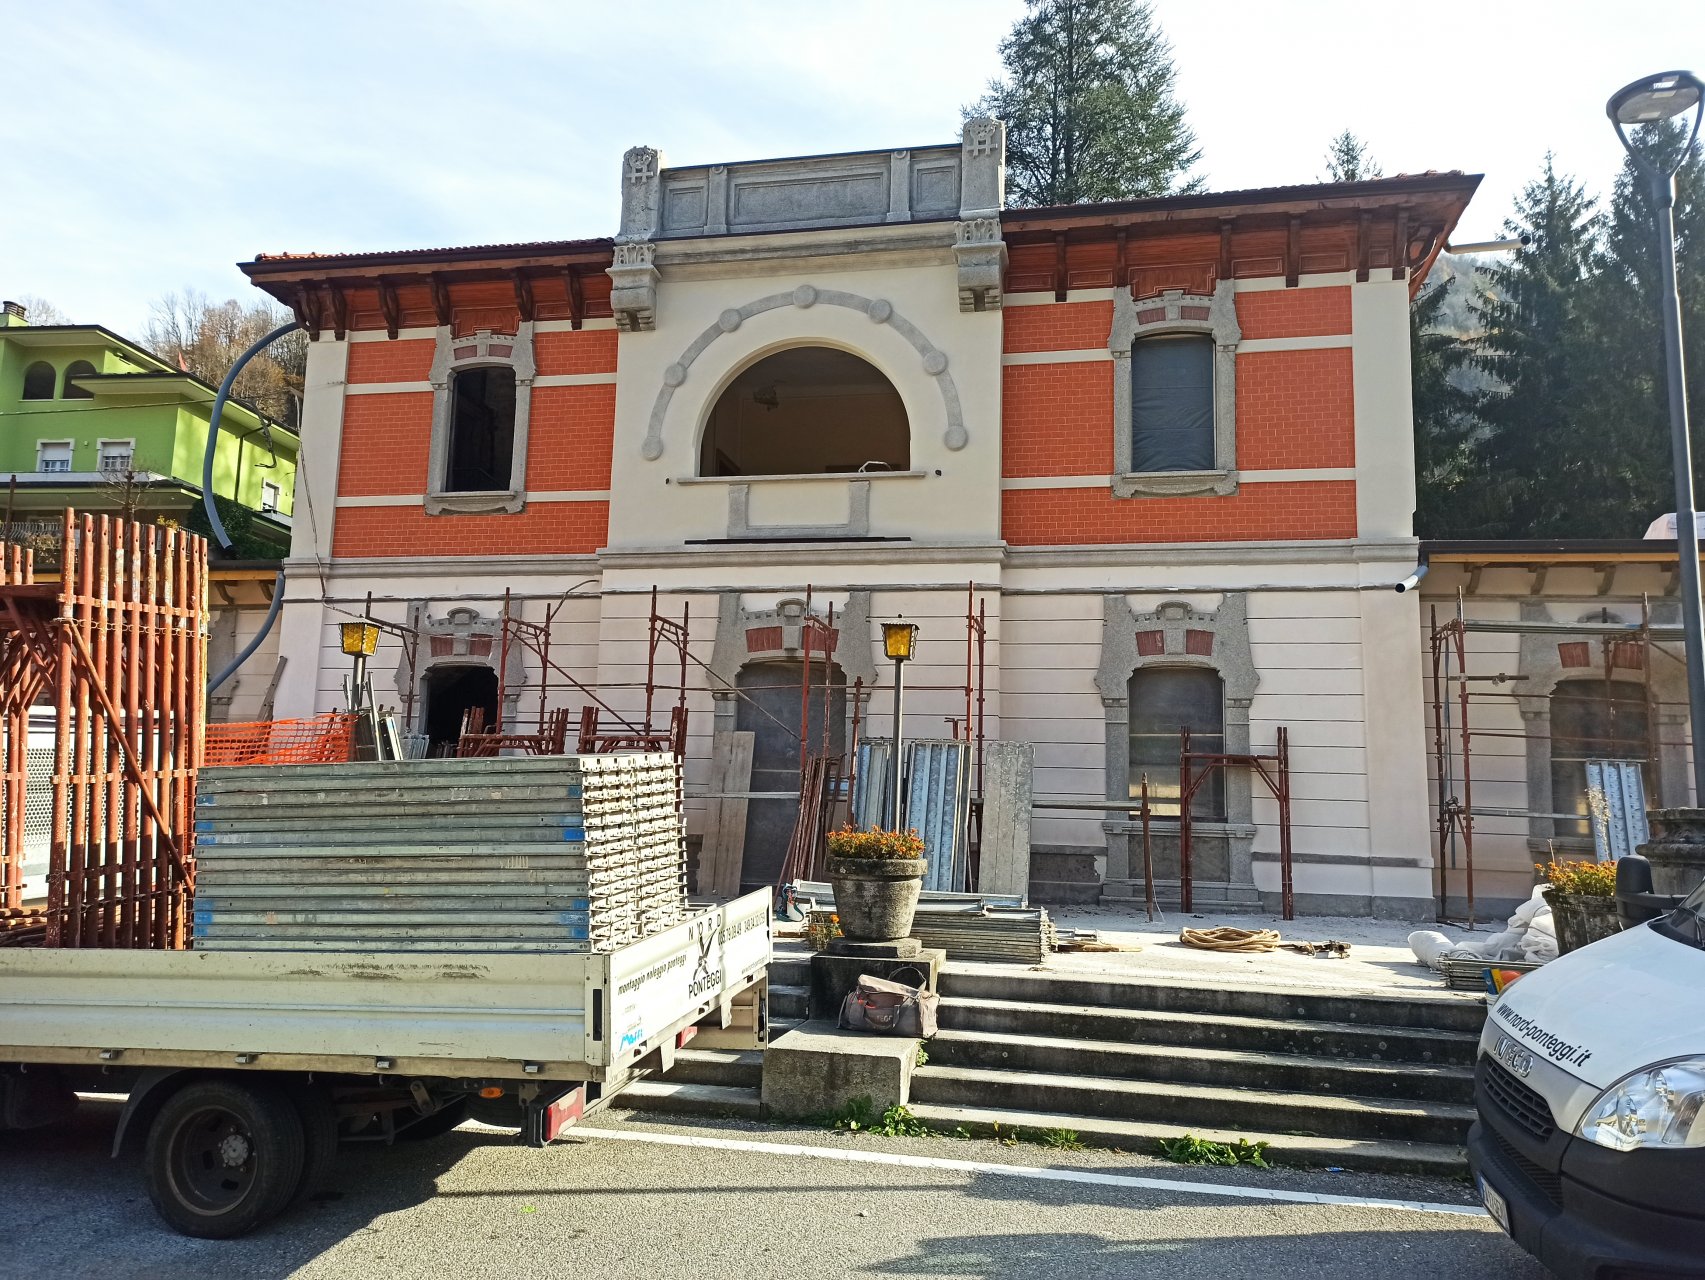 46225926_Tempo Libero - Angelo Corna - San Pellegrino I lavori di recupero dell’ex-stazione ferroviaria